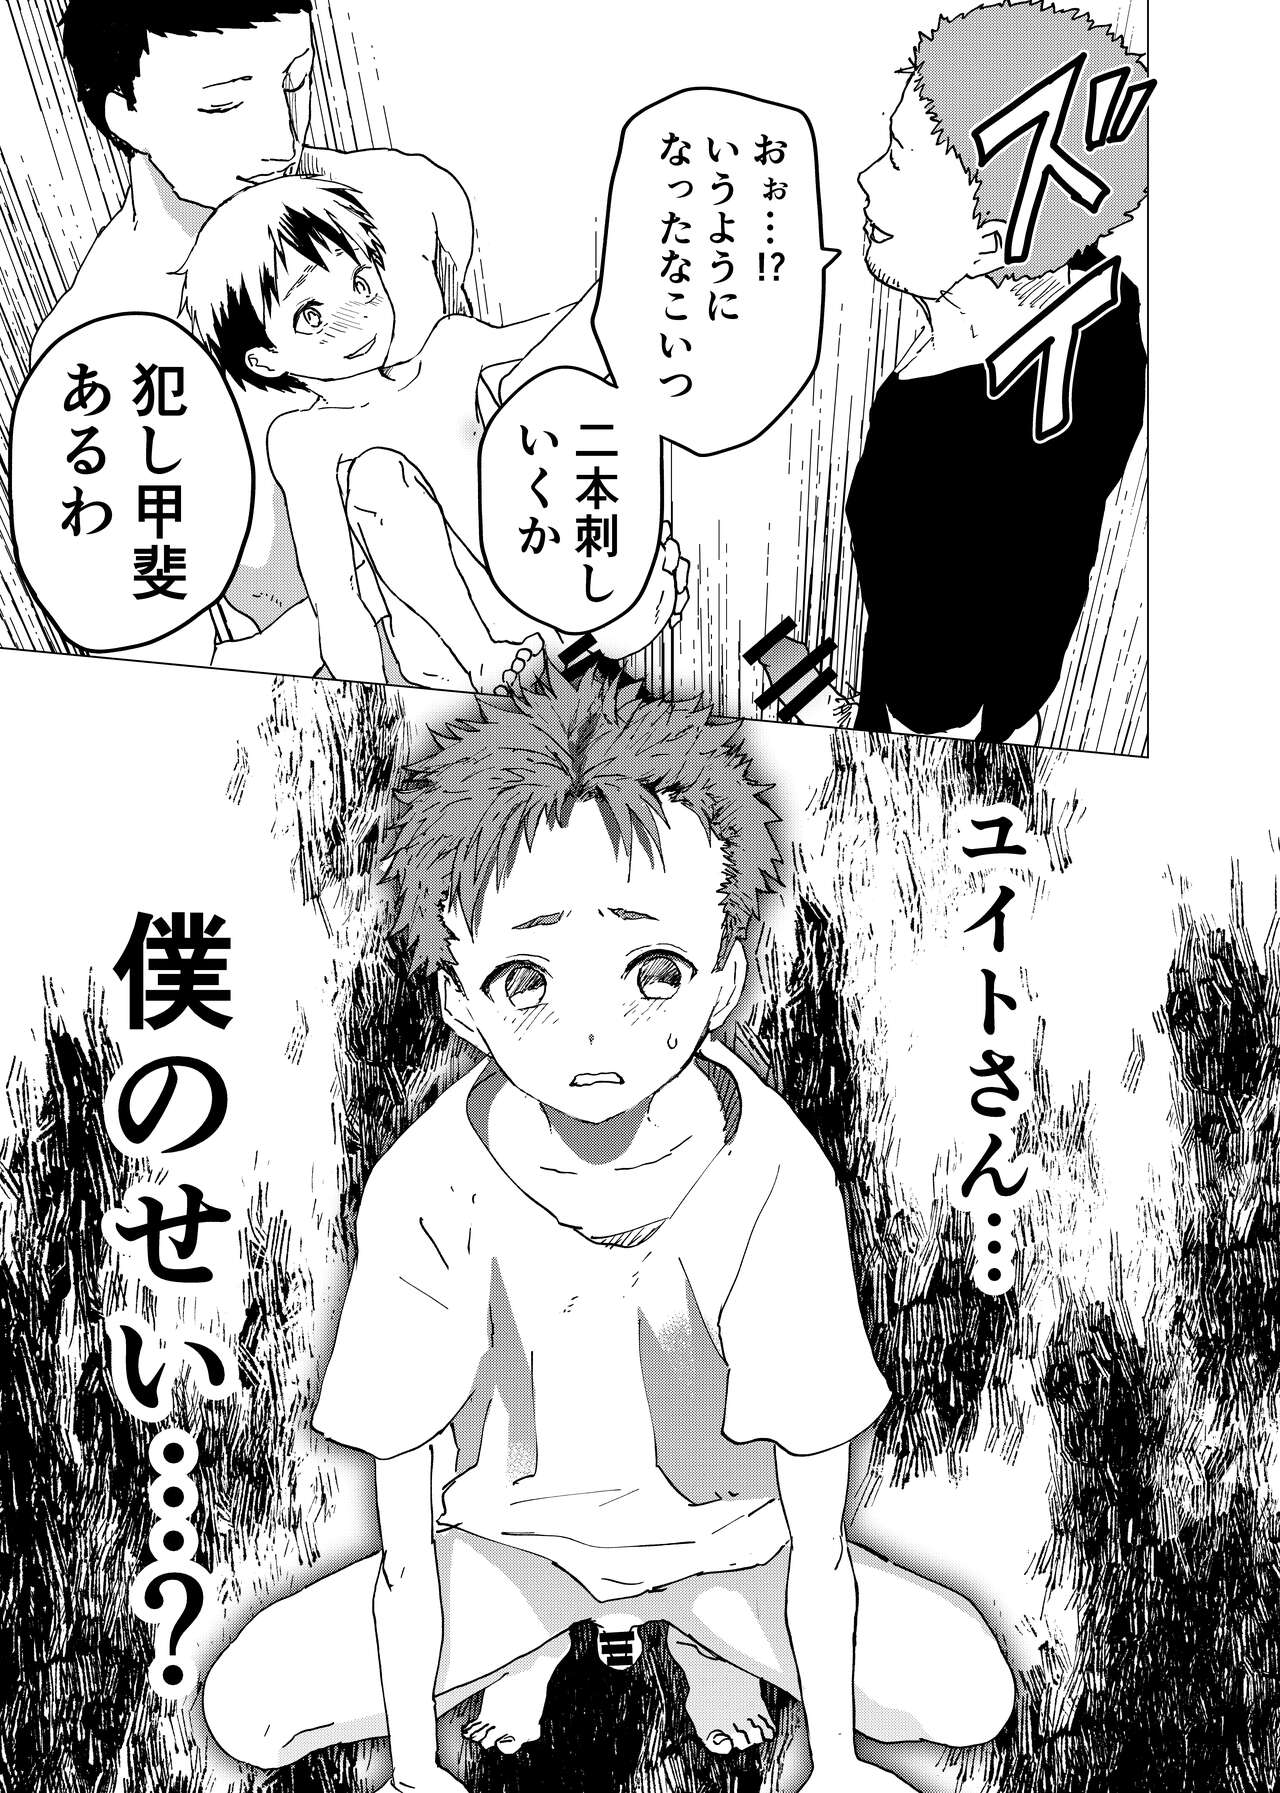 [ショタ漫画屋さん (orukoa)] 居場所がないので神待ちしてみた捨てられた少年のエロマンガ 第12話 [DL版]